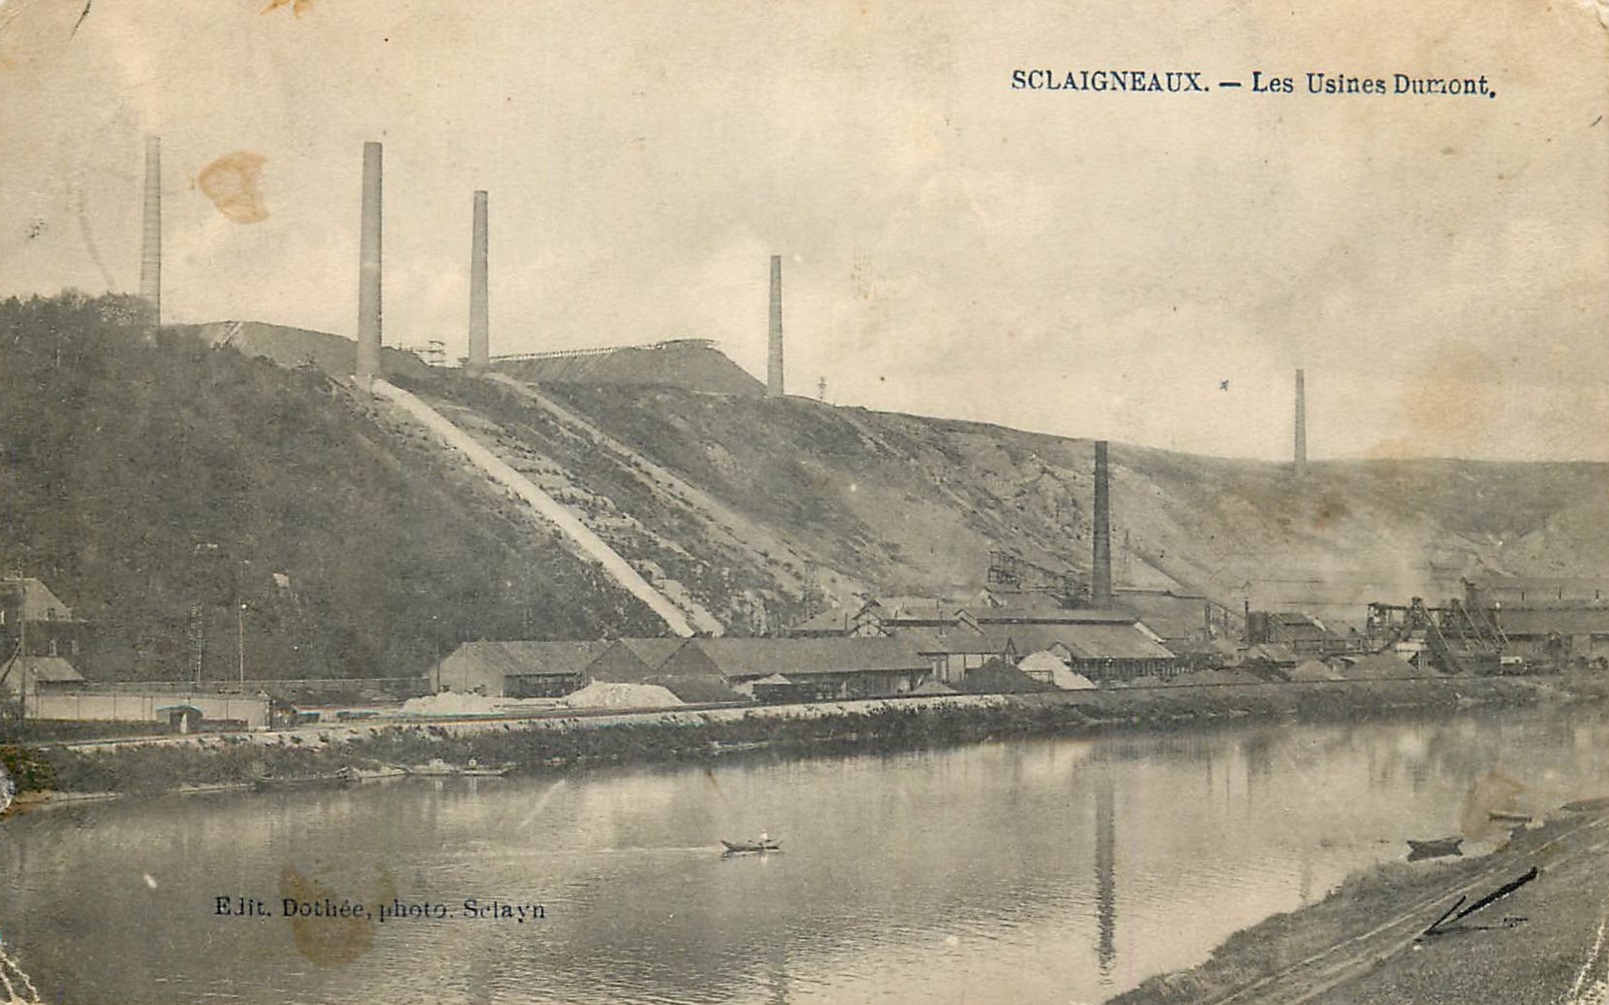 Vue des usines Dumont à Sclaigneaux, à proximité d’Andenne │ carte postale circulée, date illisible │ col. pdgit1918